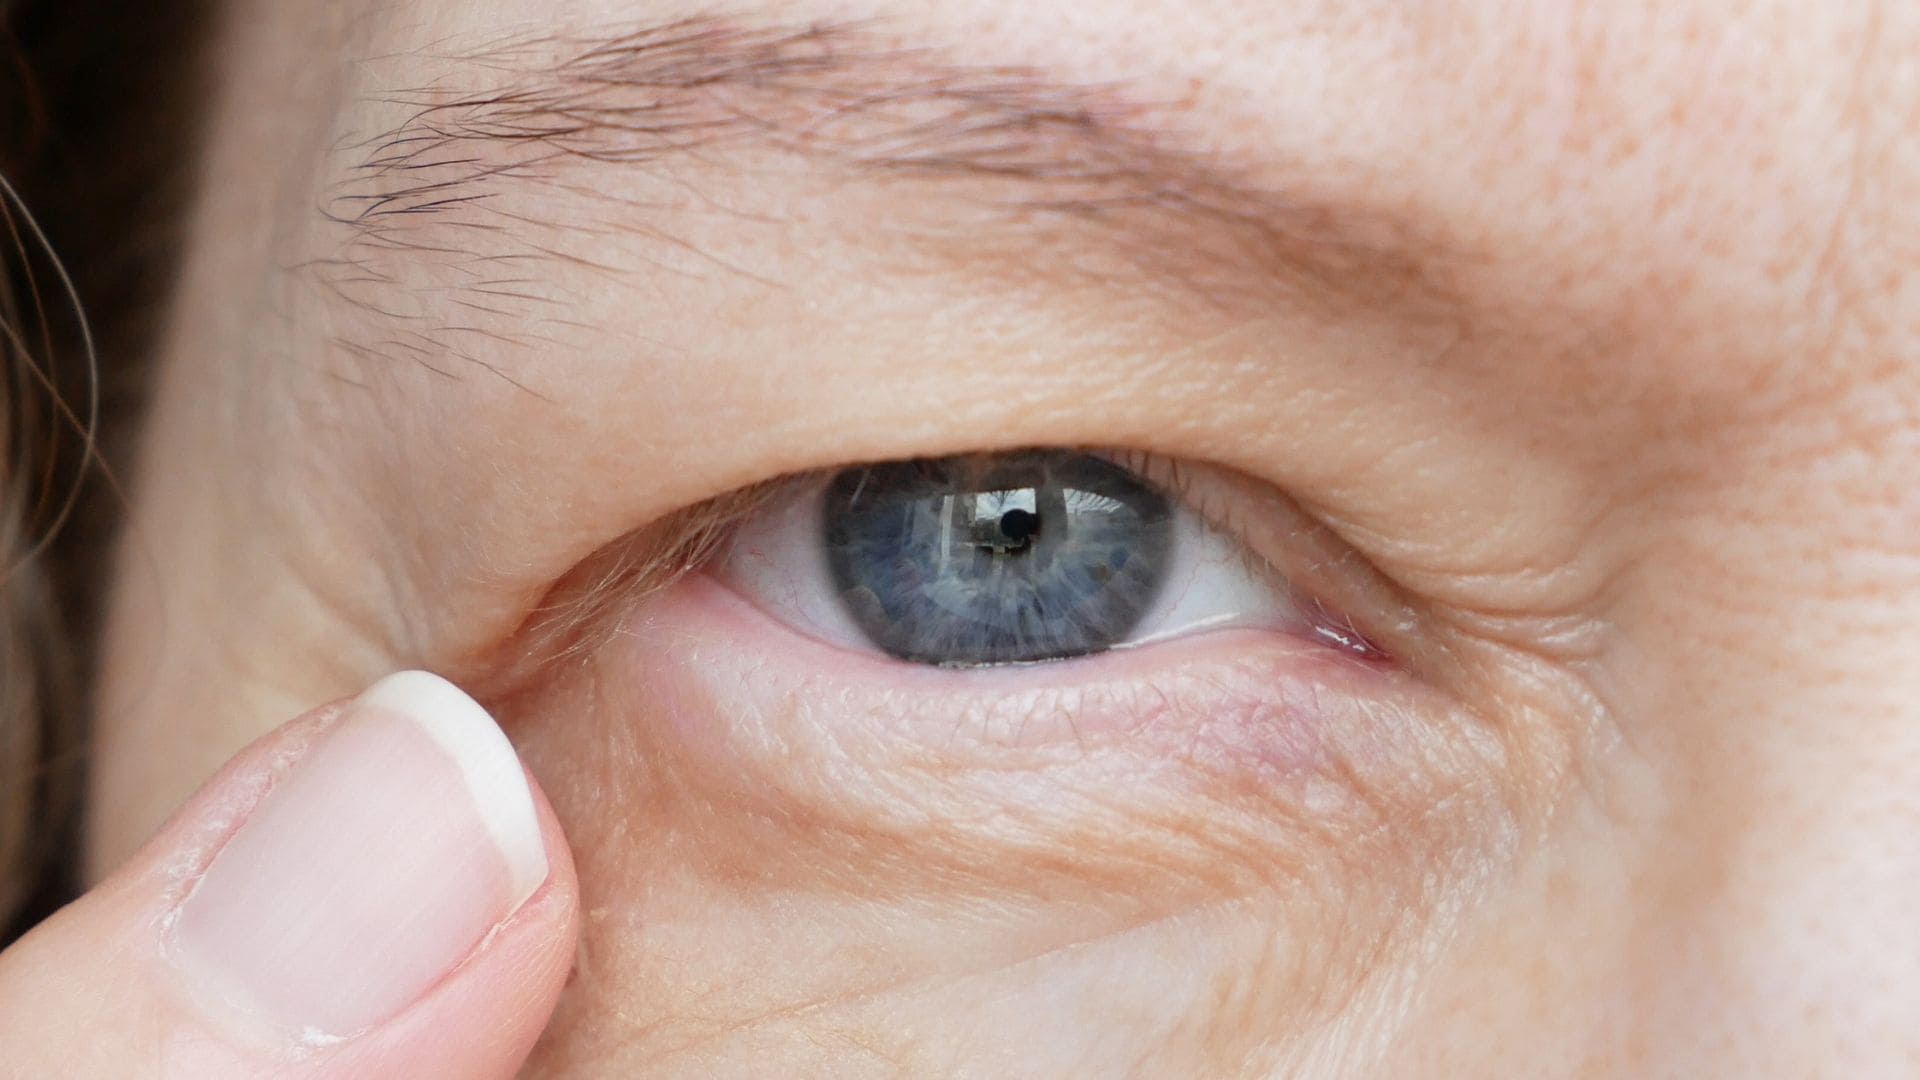 Olho Tremendo ou Tremor palpebral: o que é, causas e tratamento adequado